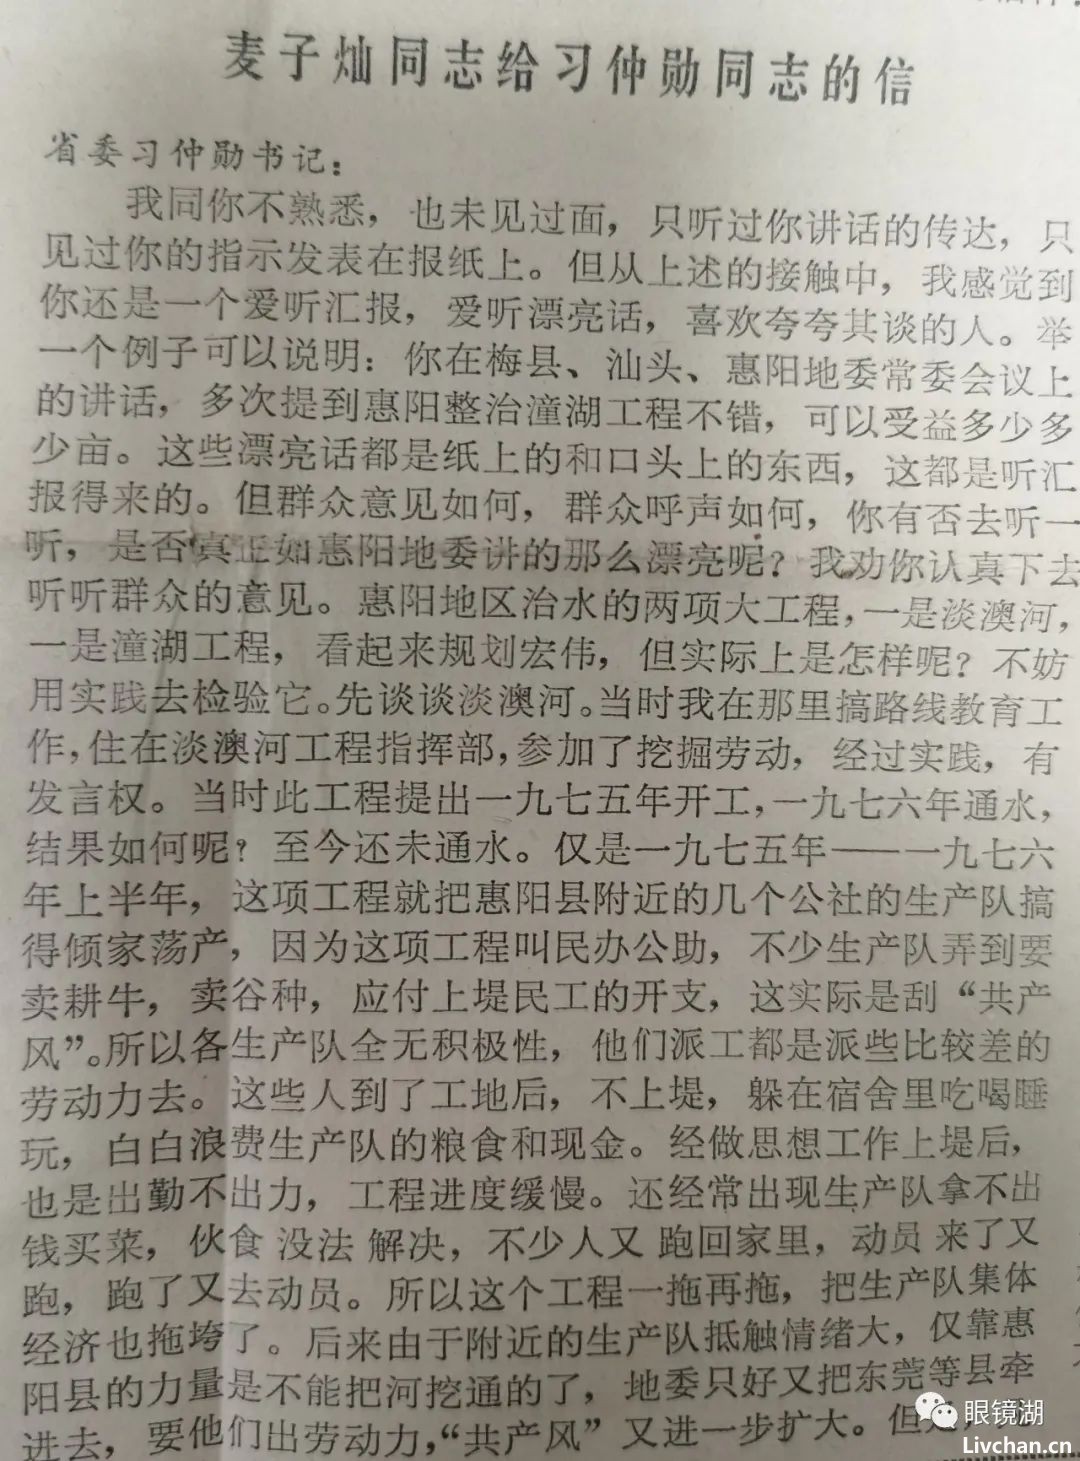 1978年11月8日人民日报刊登的麦子灿批评广东省委第二书记习冲勋的信